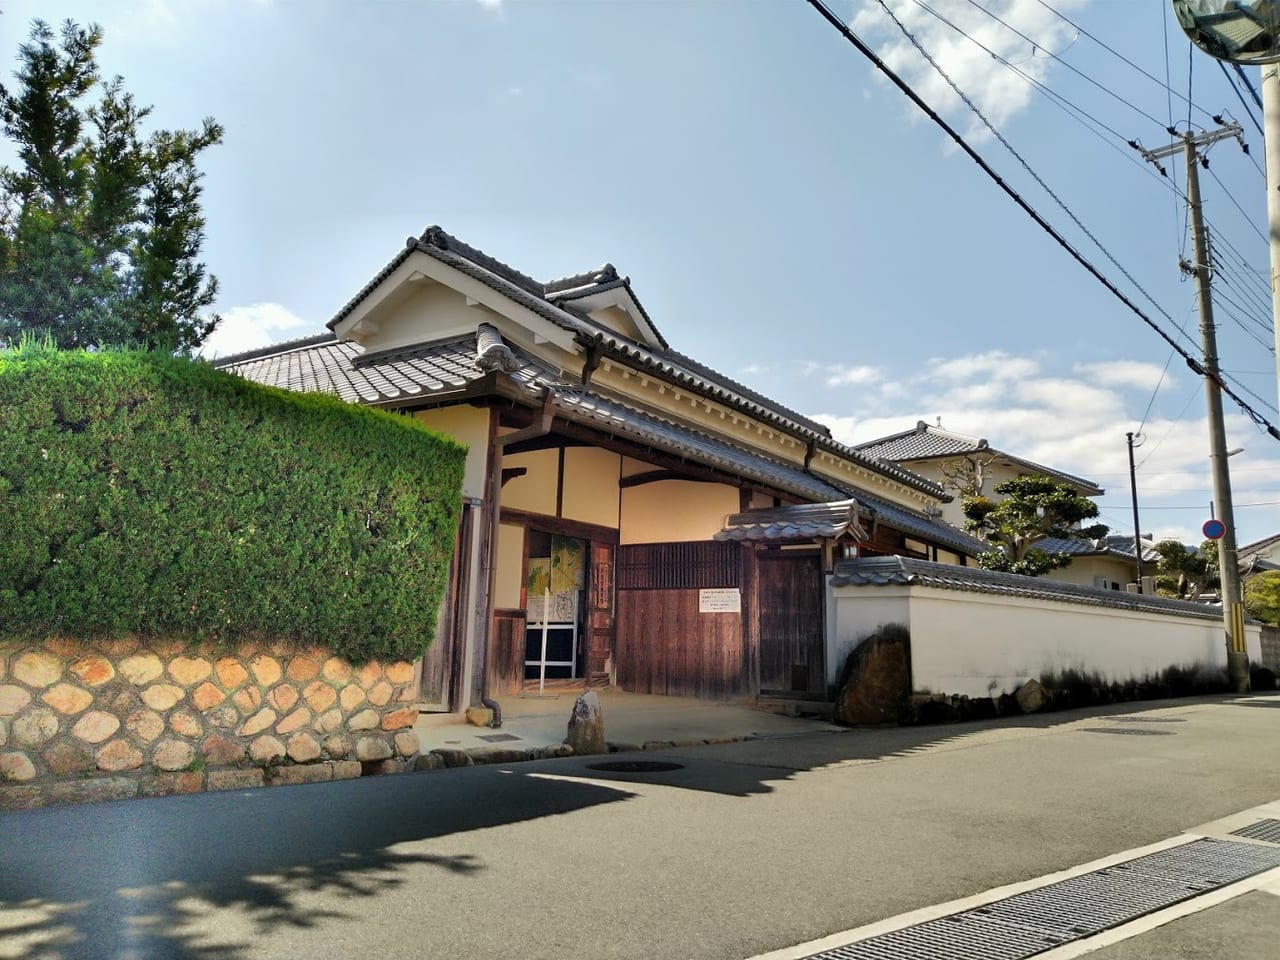 旧和田家住宅は宝塚市指定文化財です